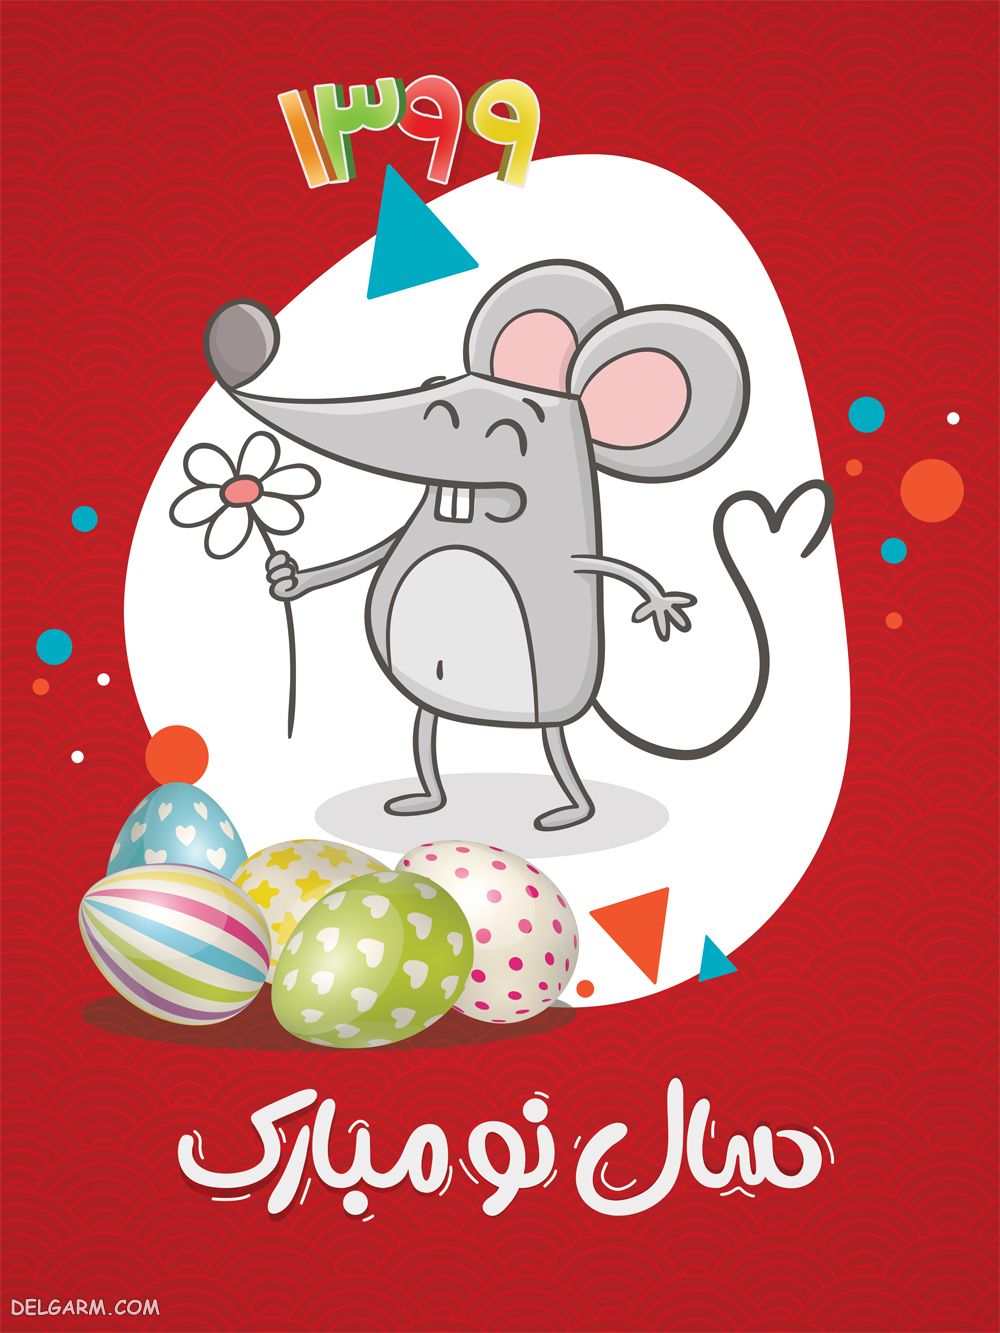 کارت پستال تبریک نوروز 99 سال موش